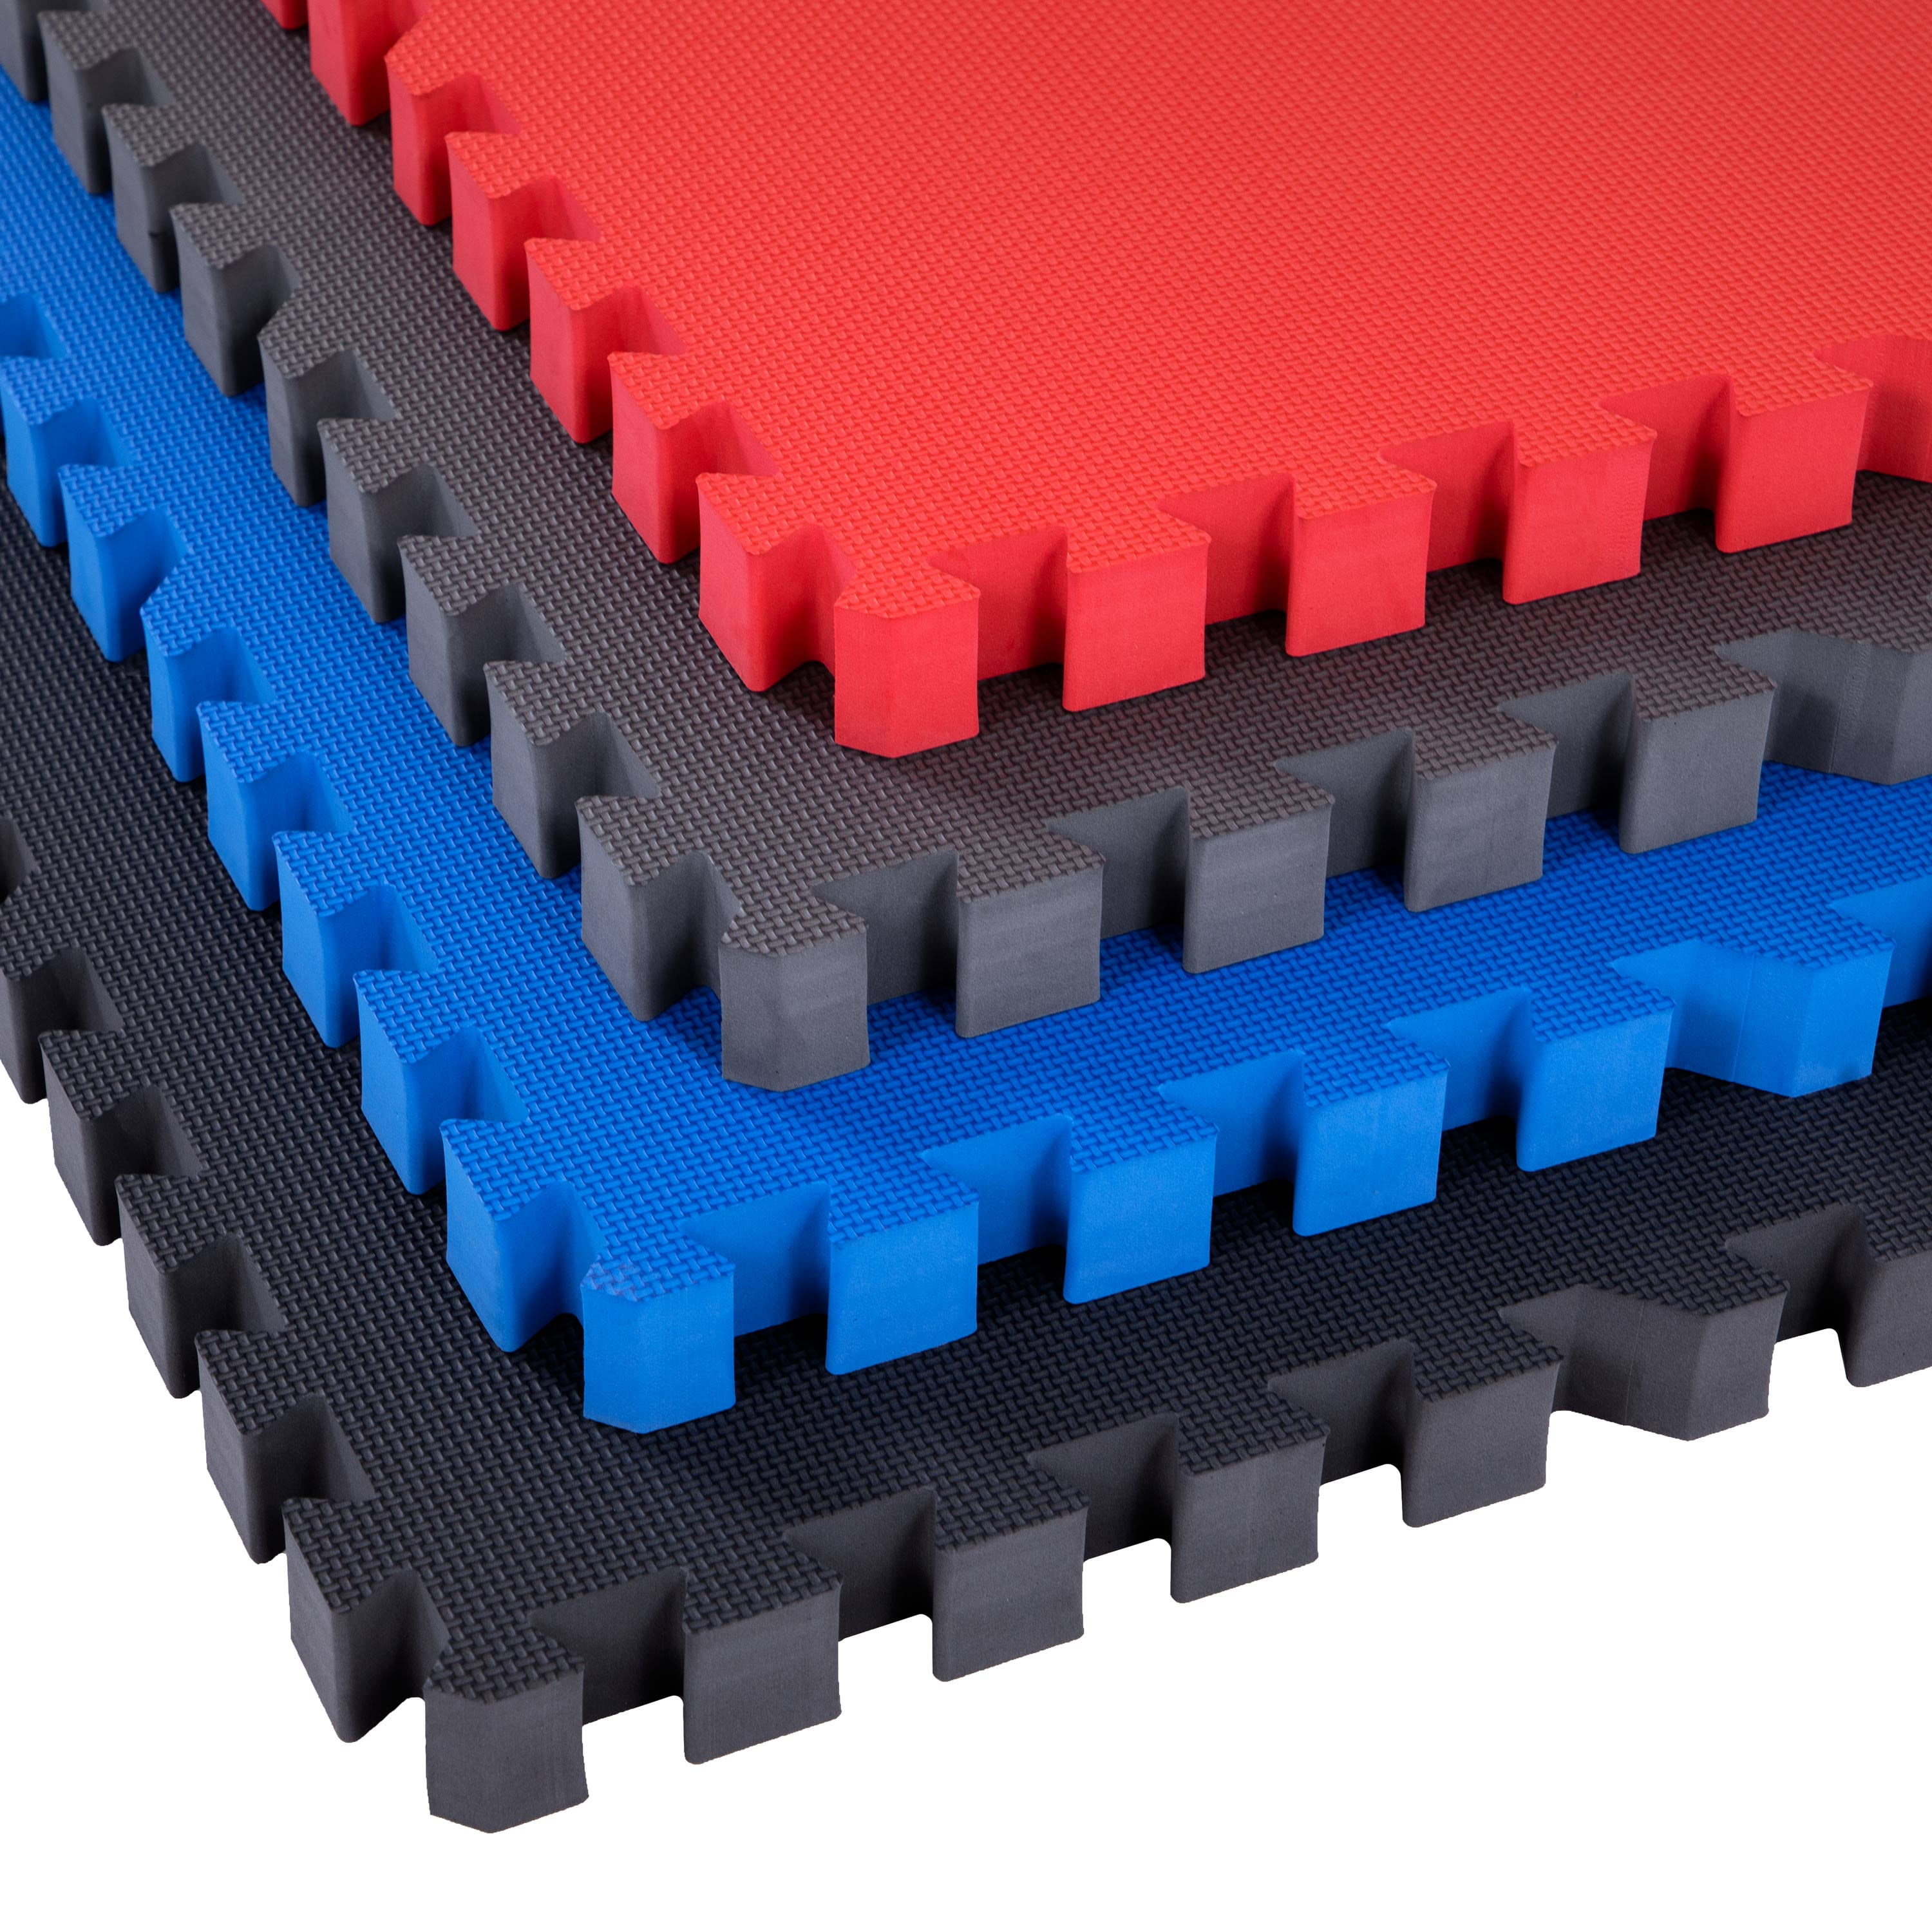 48 sq ft red interlocking foam floor puzzle tiles mats puzzle mat flooring 